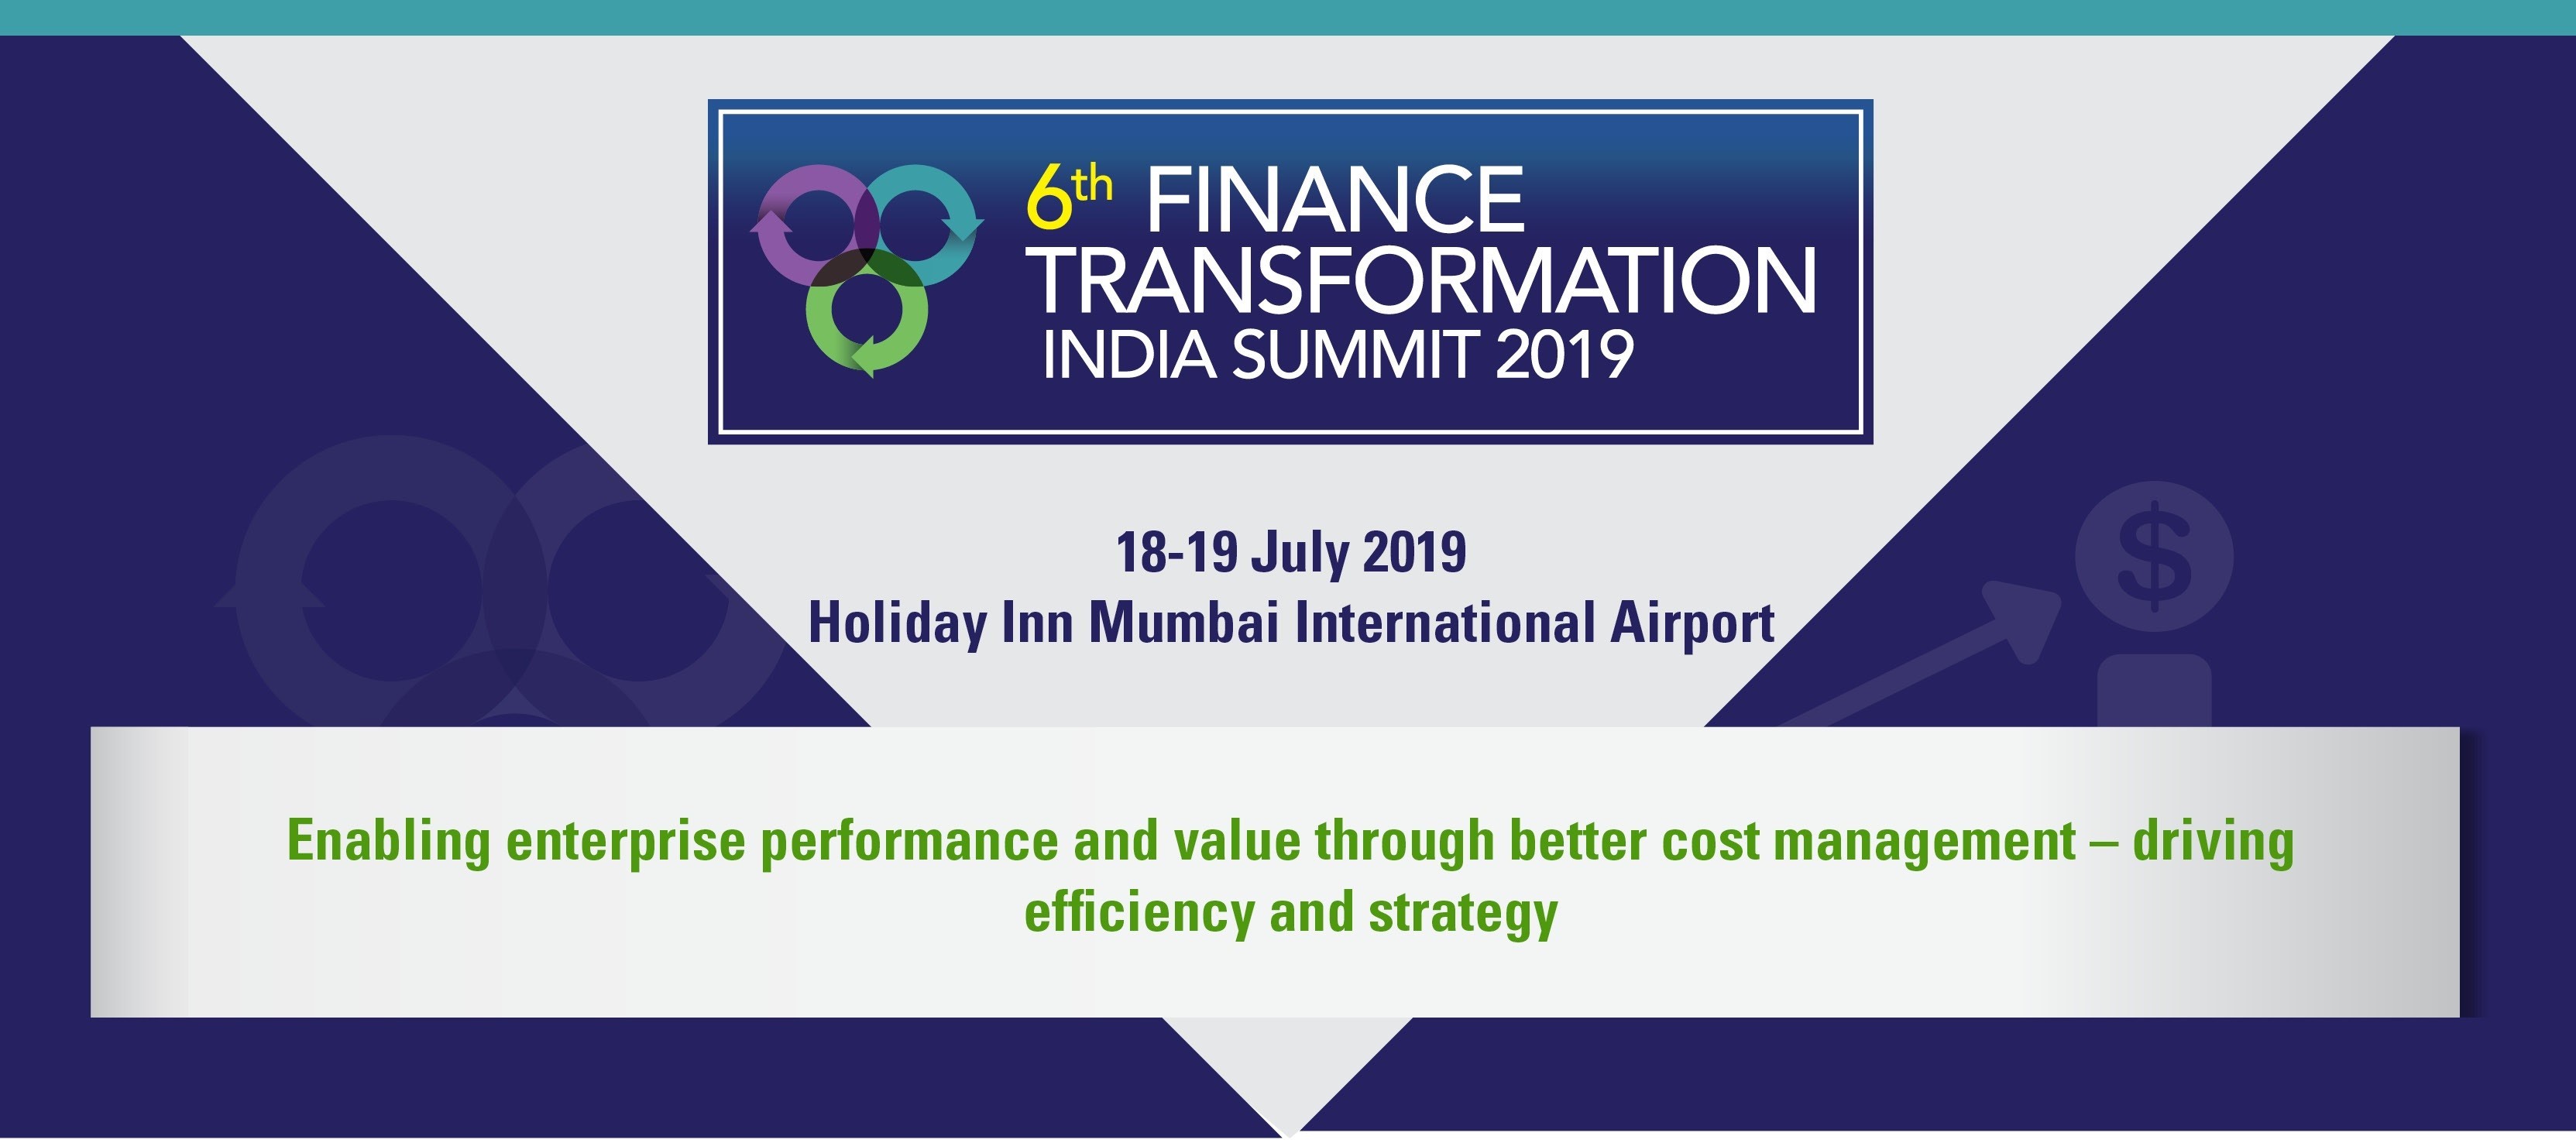 6th FINANCE TRANSFORMATION INDIA SUMMIT 2019, Mumbai, Maharashtra, India